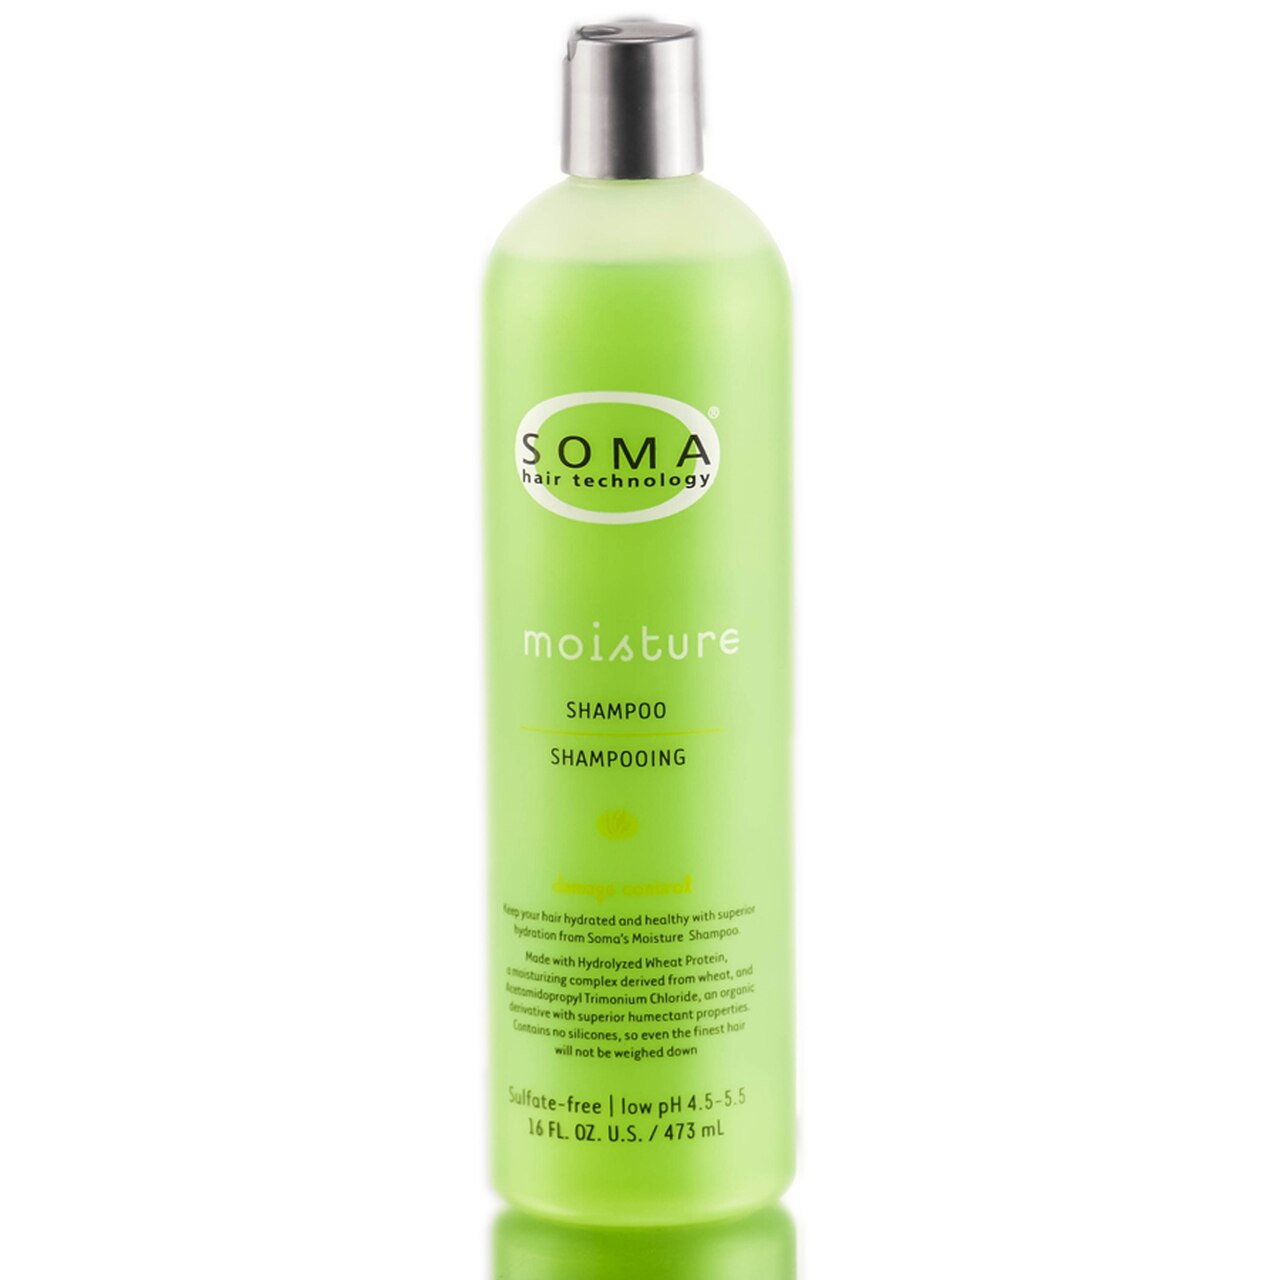 SOMA Moisture Shampoo